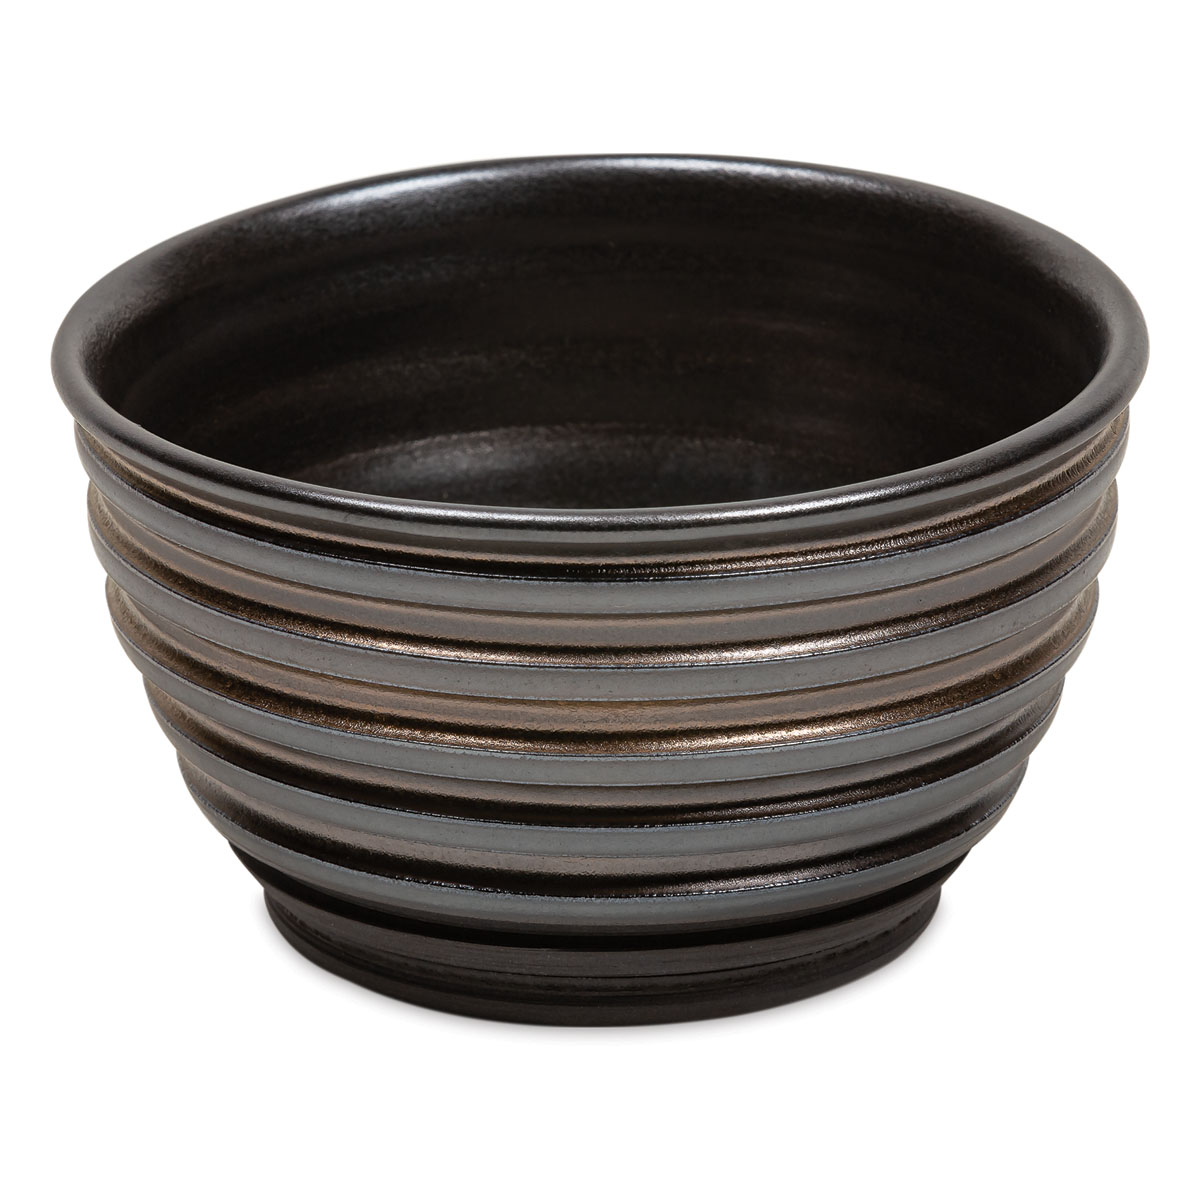 SIO-2® PM Black Earthenware Low Fire Ceramic Clay Body, 27.6 lb